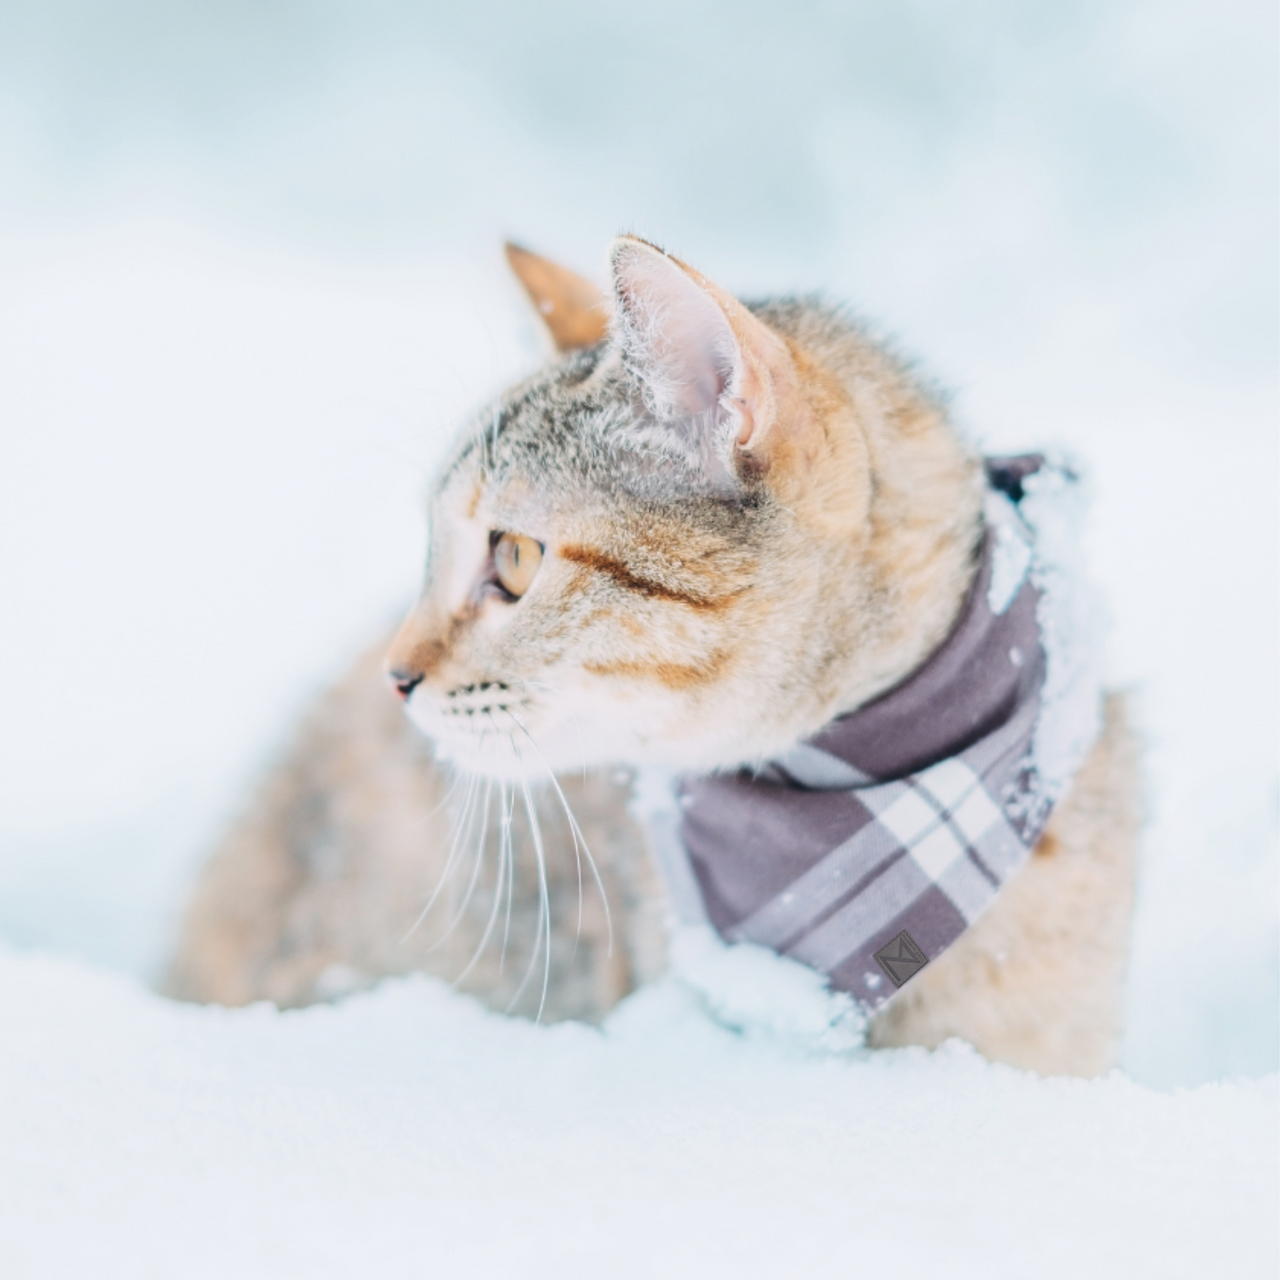 Premium Photo  A cat in a winter coat